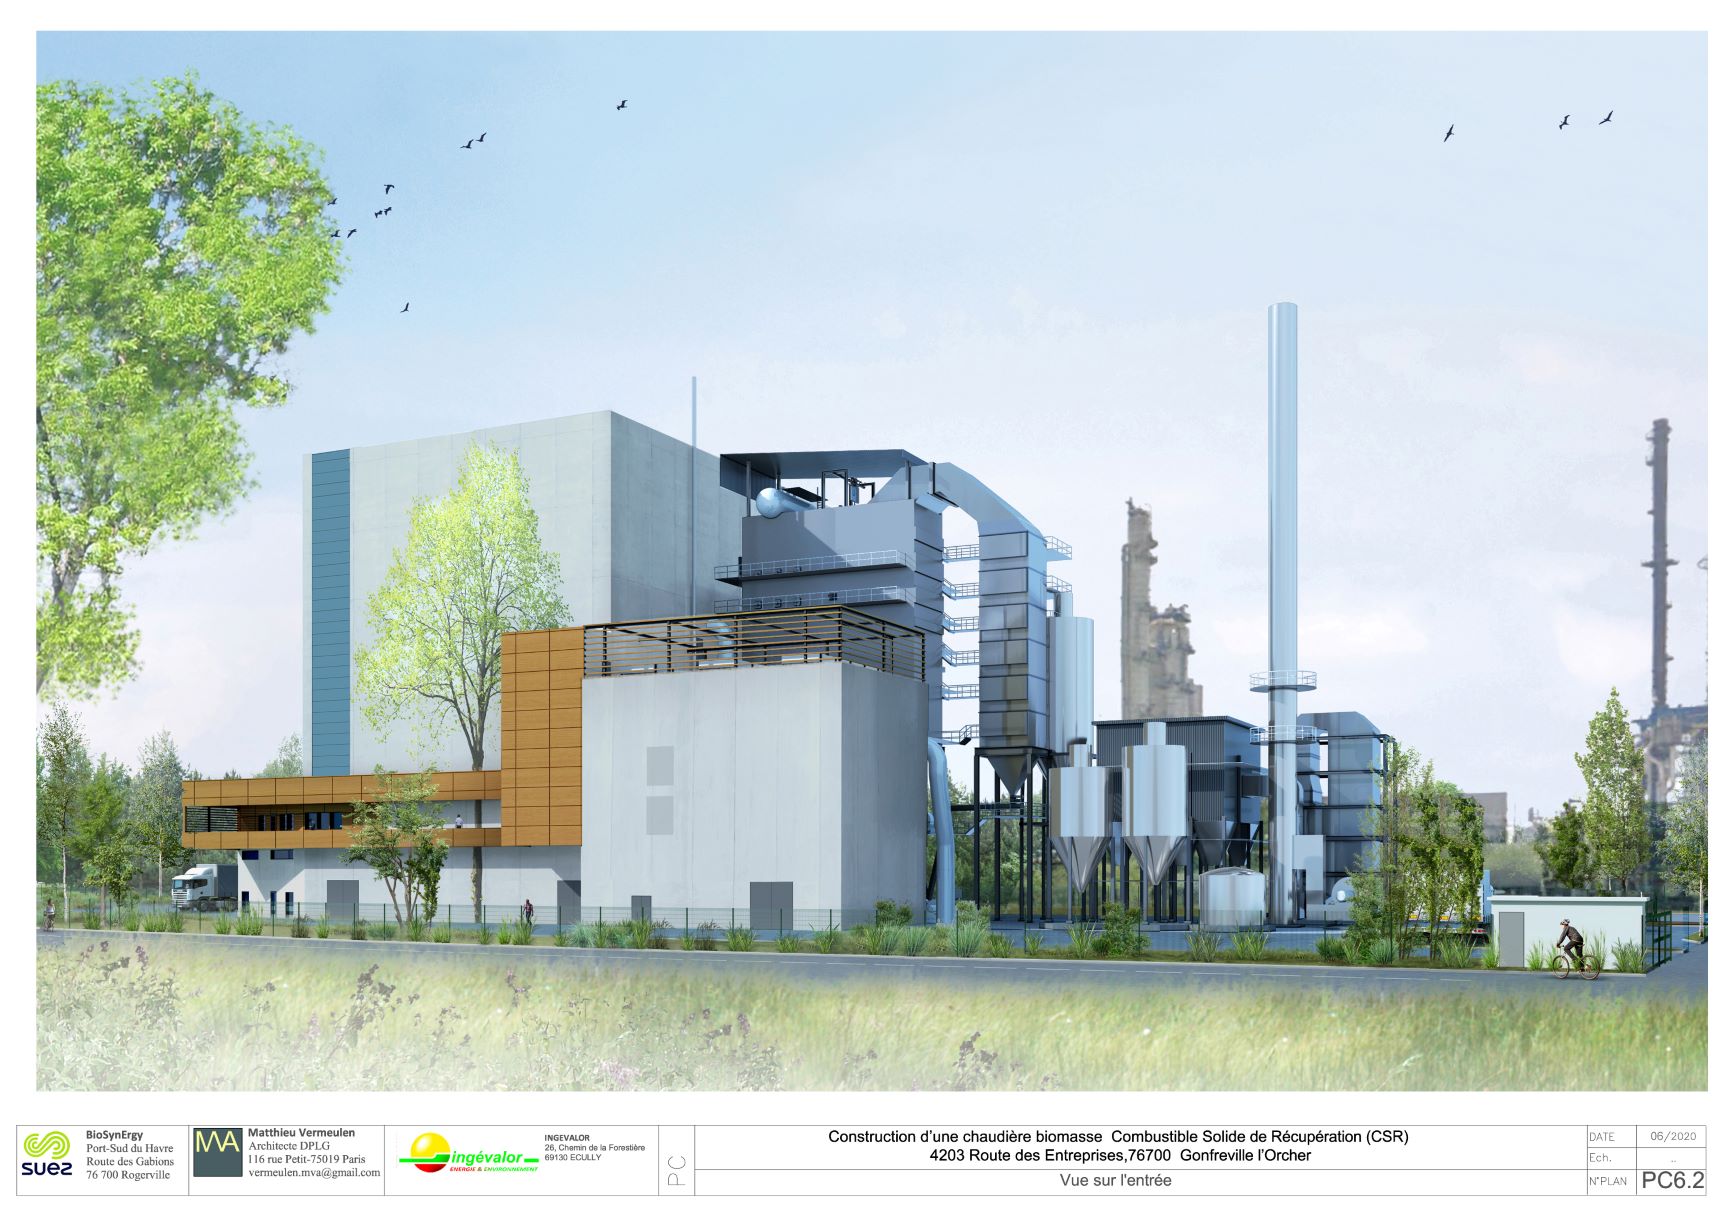 Le Groupe Suez Choisit Leroux & Lotz Technologies Pour Fournir La Chaudière De La Future Centrale Biomasse, BioSynErgy 76, Au Havre